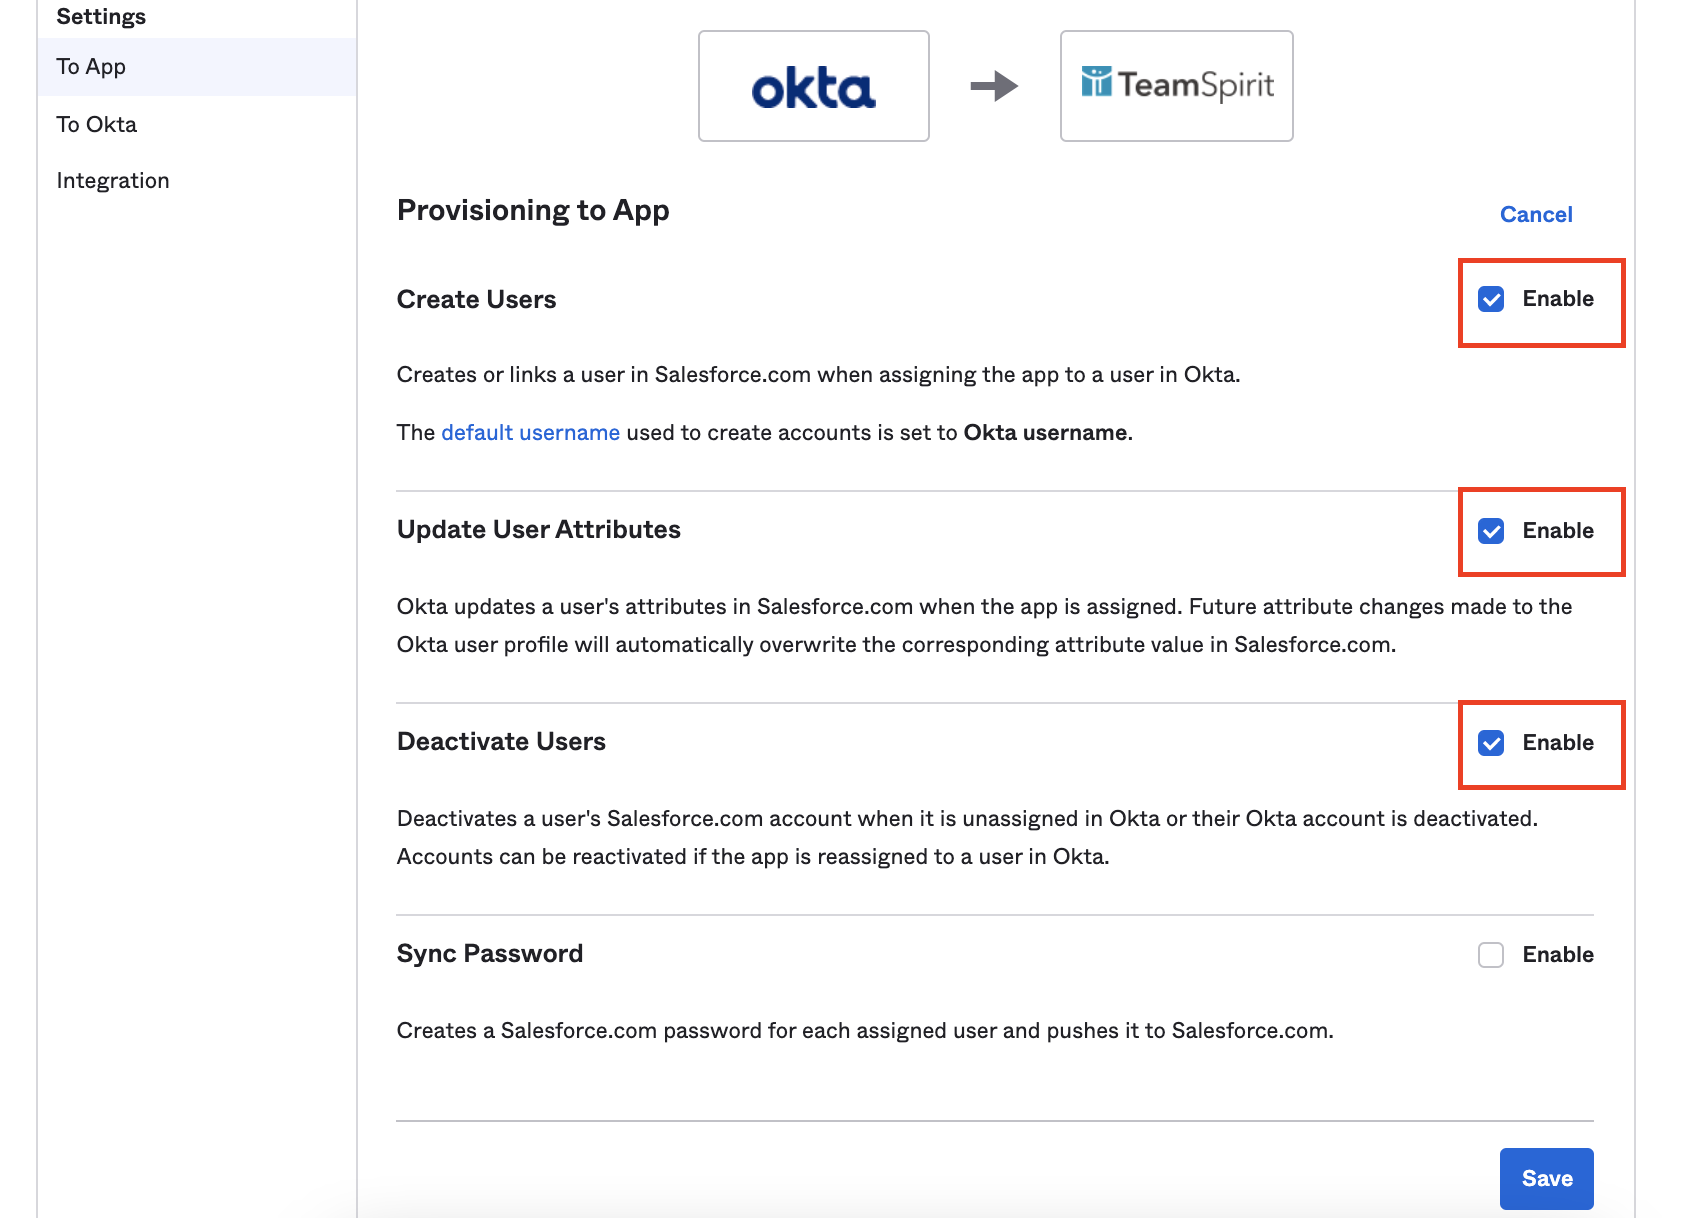 To Appタブにて、OktaのユーザをSalesforce/TeamSpirit側に同期させる設定を行う。